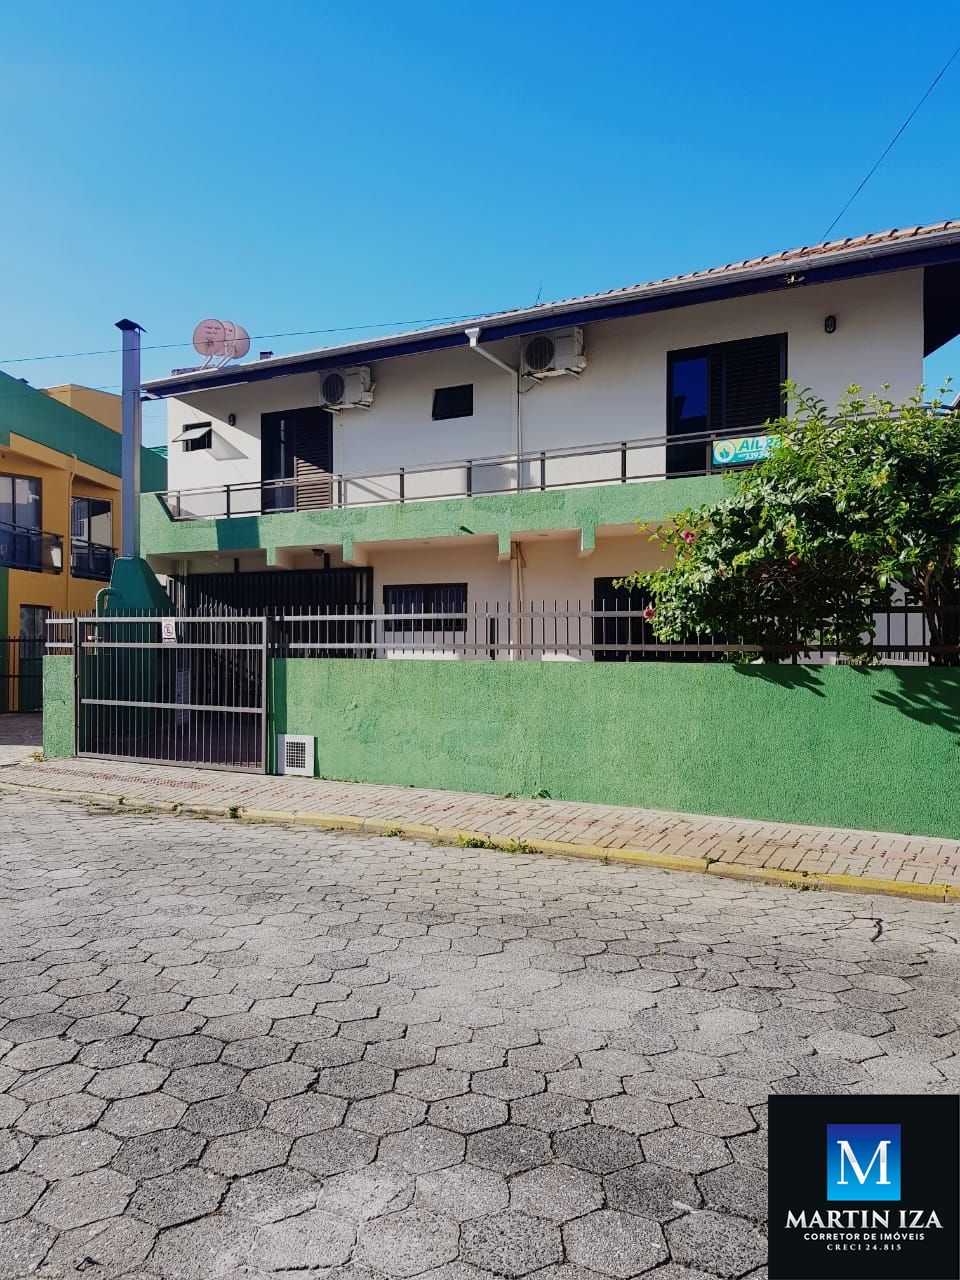 Apartamento com 3 Dormitórios para alugar, 100 m² por R$ 600,00